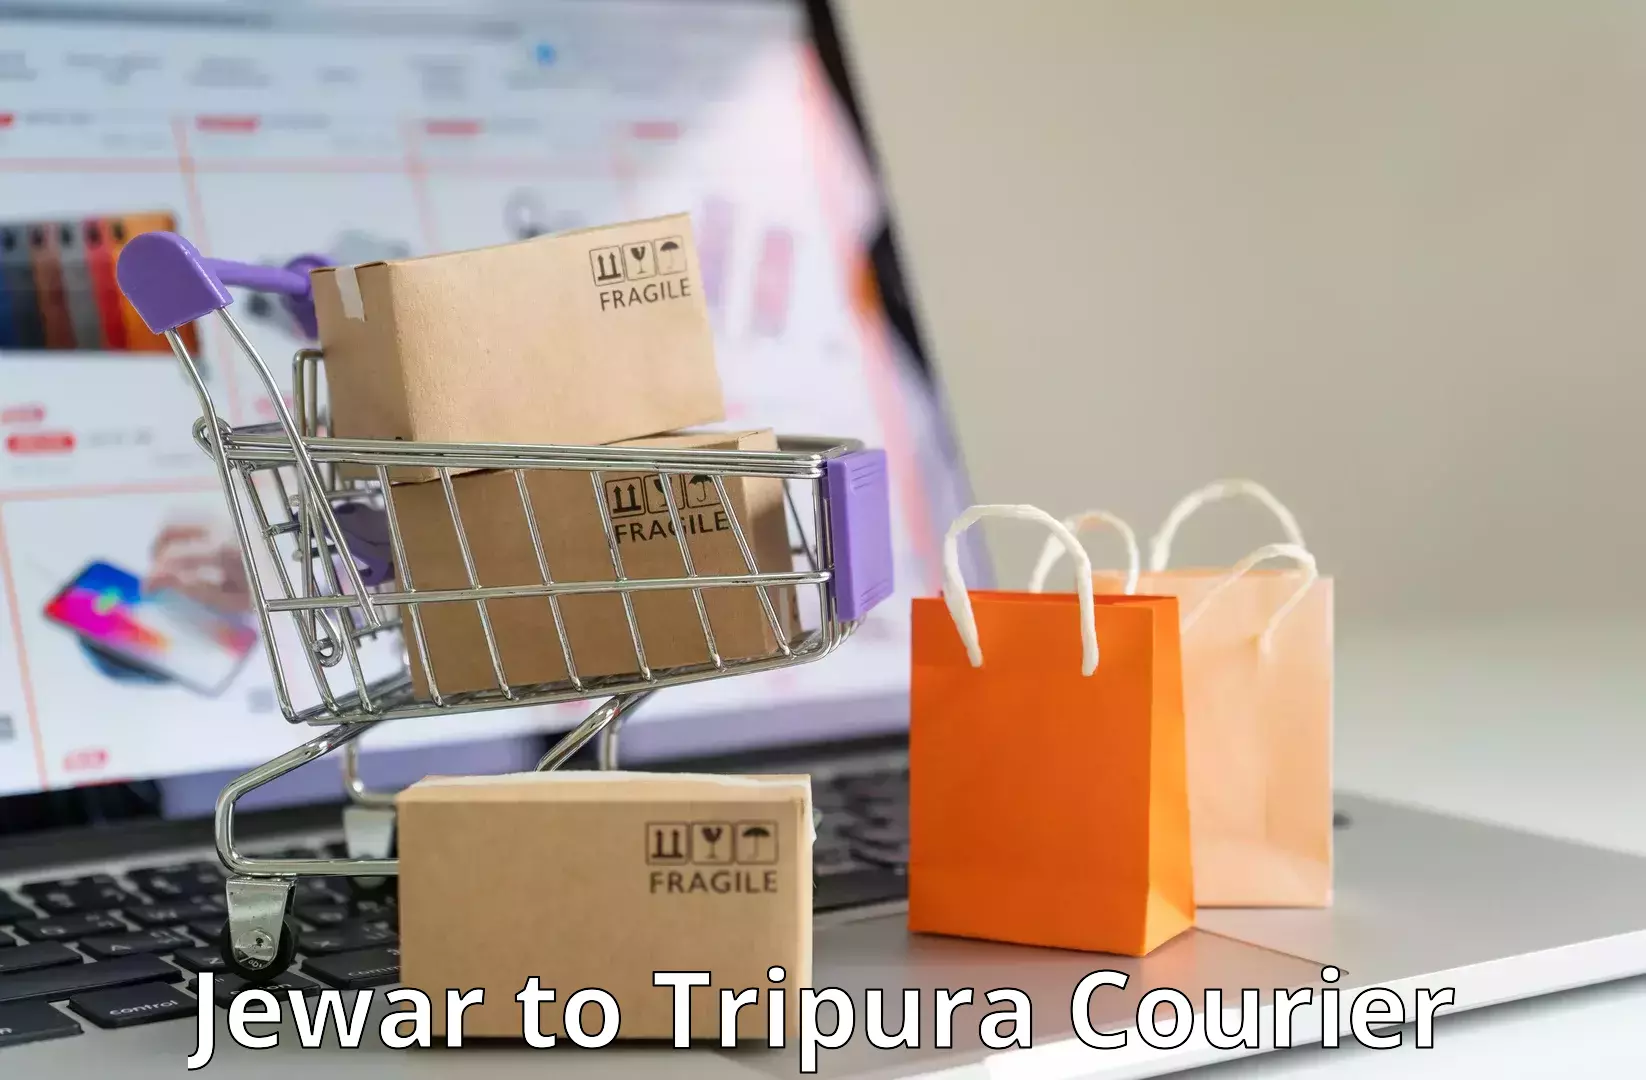 Modern courier technology Jewar to Tripura